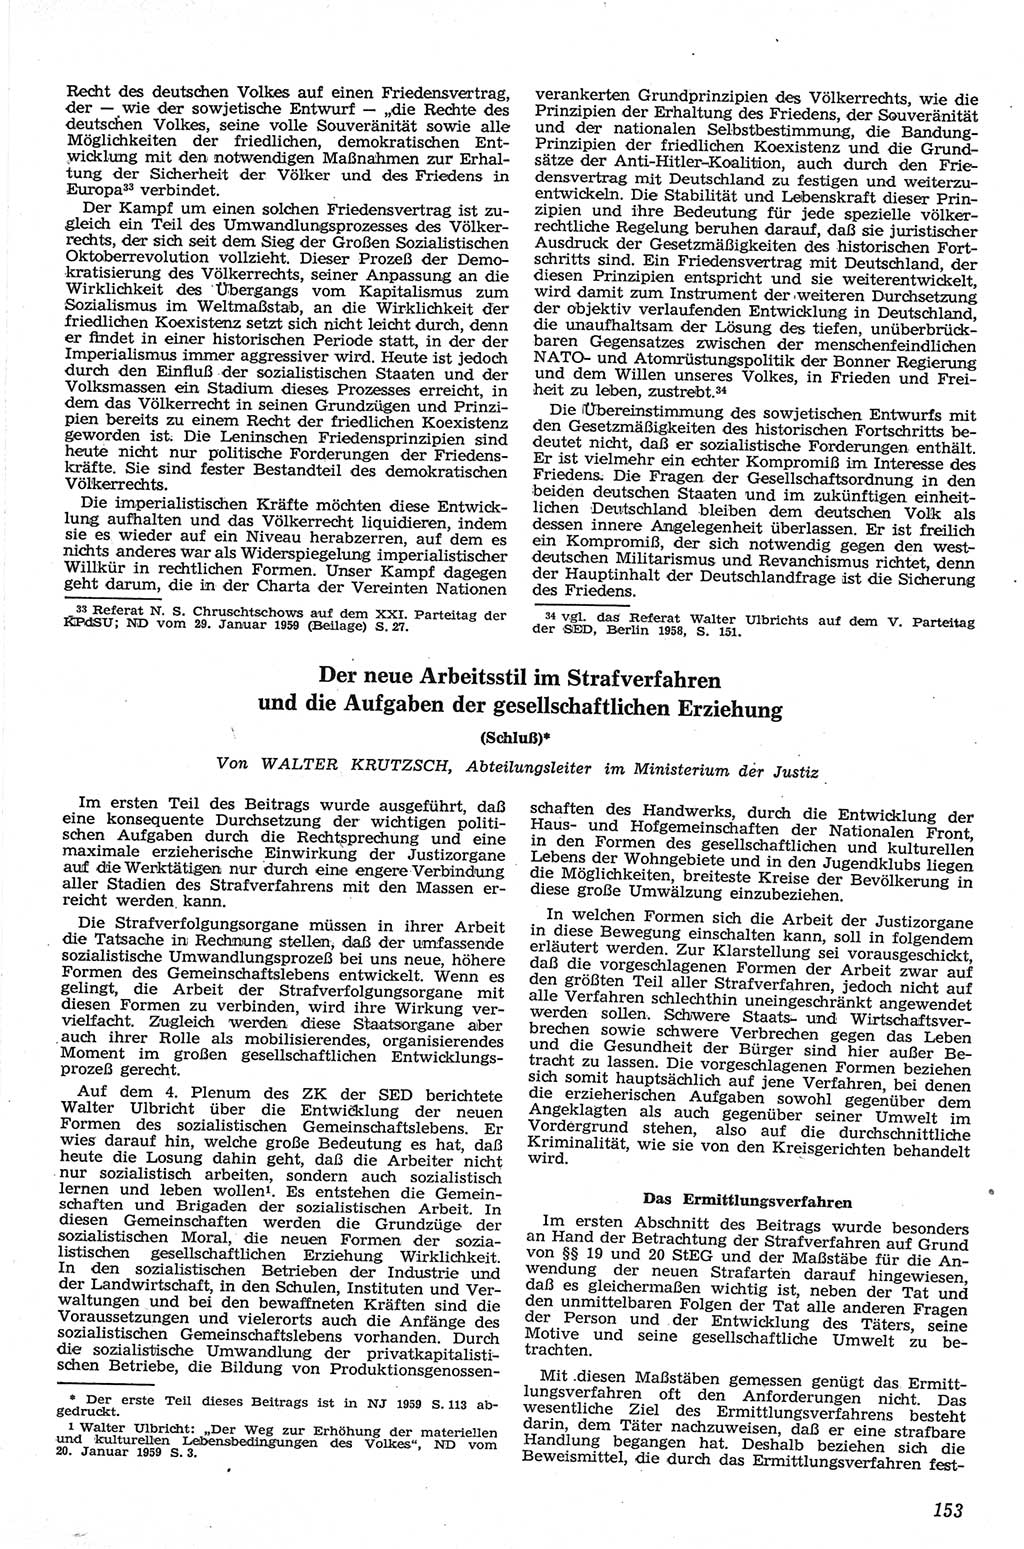 Neue Justiz (NJ), Zeitschrift für Recht und Rechtswissenschaft [Deutsche Demokratische Republik (DDR)], 13. Jahrgang 1959, Seite 153 (NJ DDR 1959, S. 153)